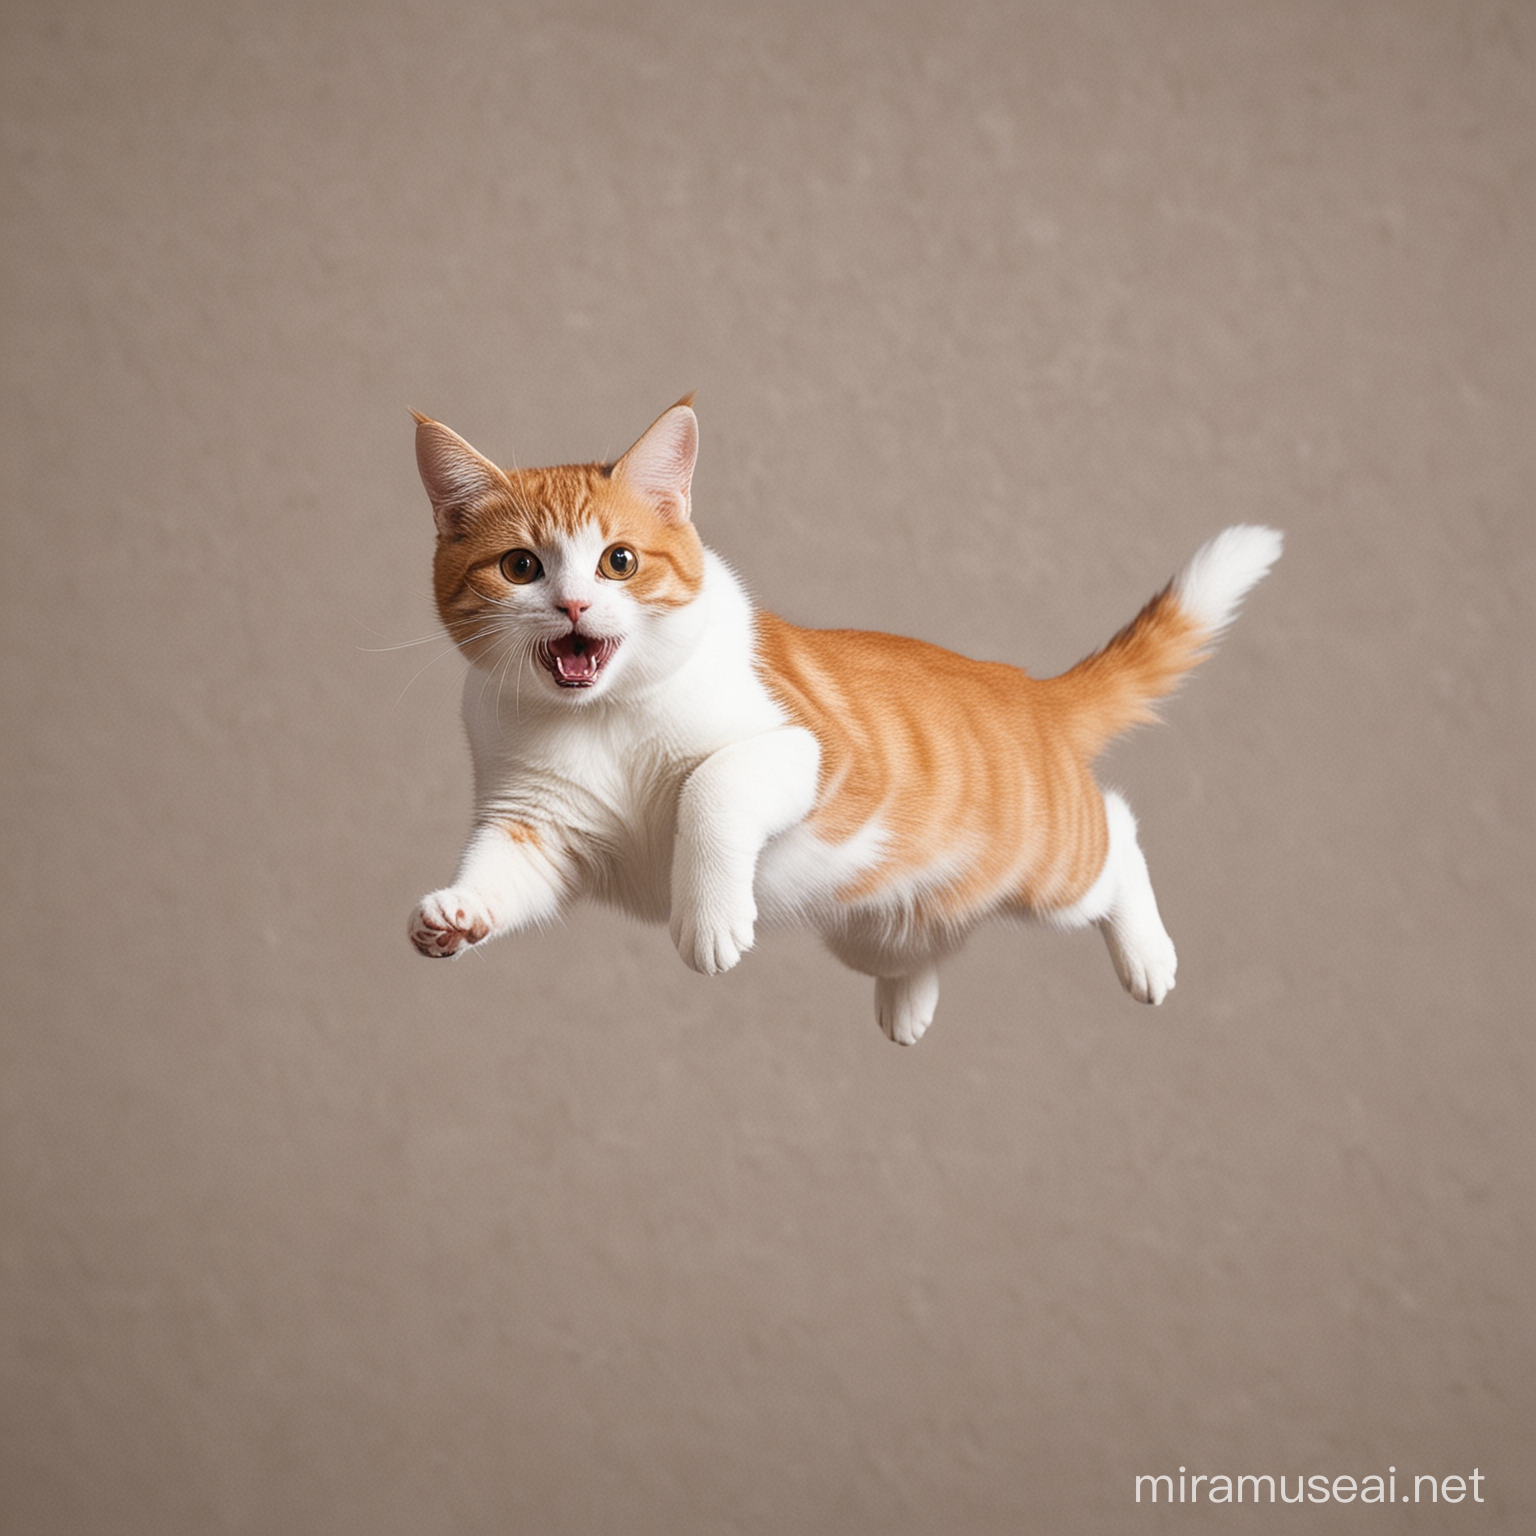 un gato volador

